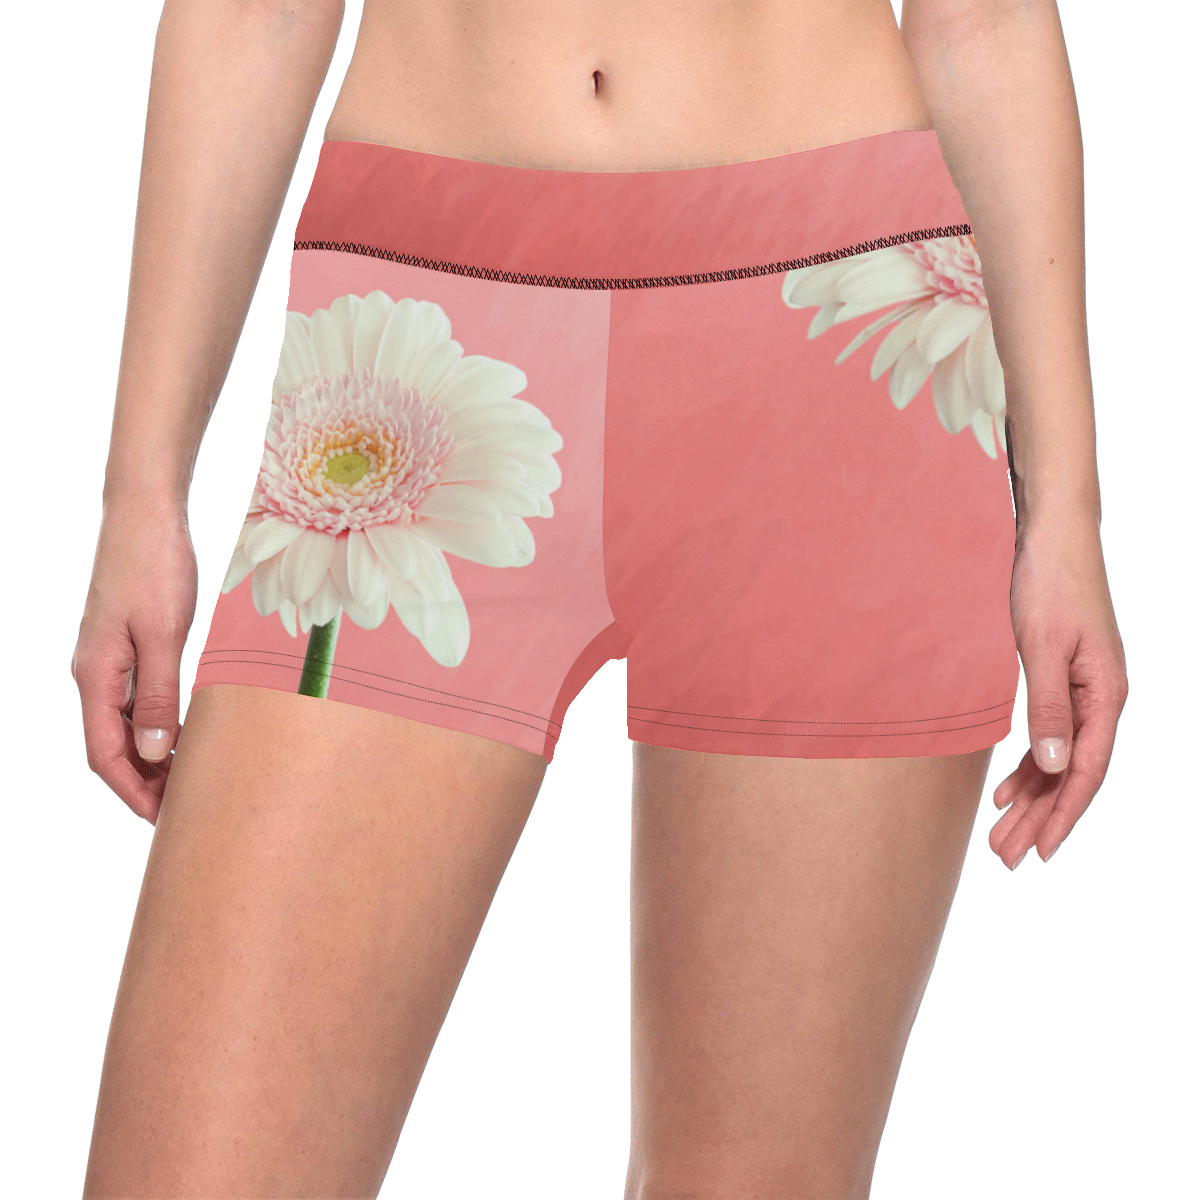 Gerbera Daisy - White Flower on Coral Pink Women's All Over Print Short Leggings (Model L28)